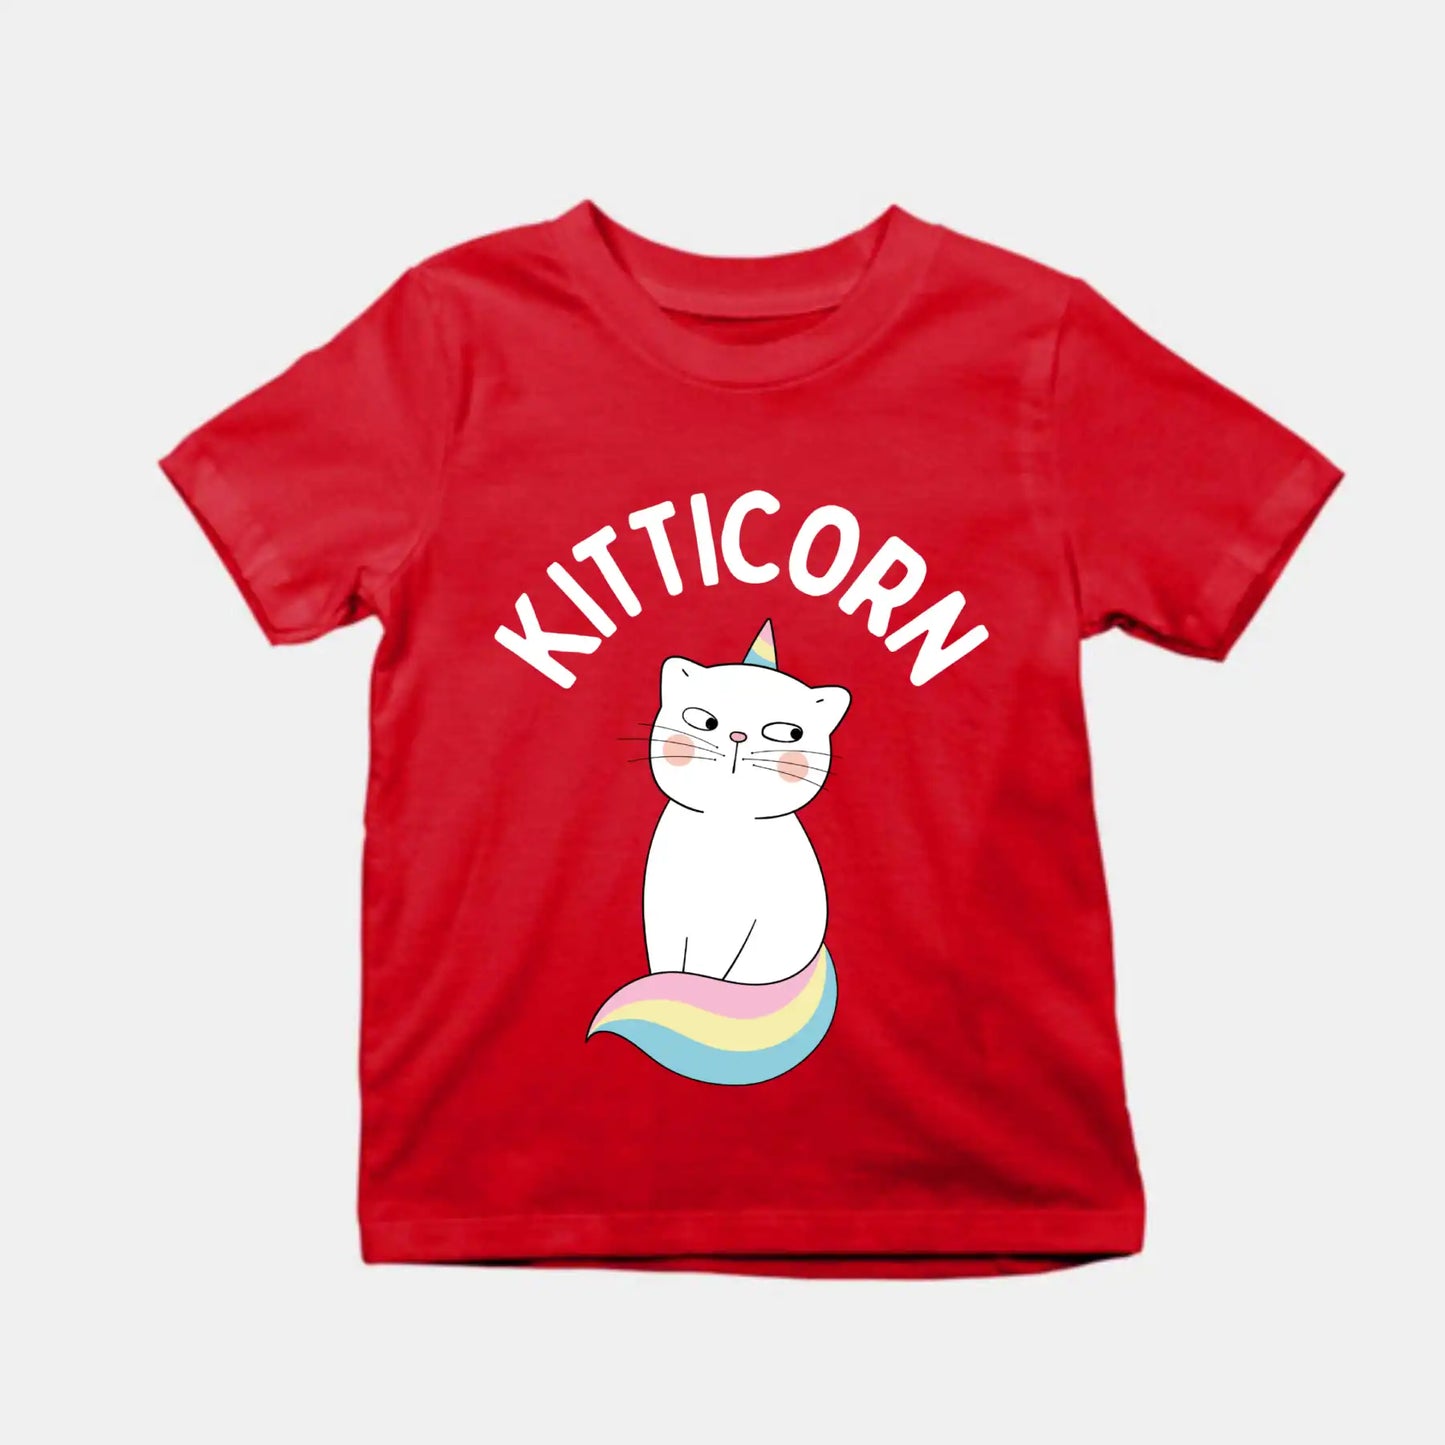 Kitticorn Kids T-Shirt Red IZZIT APPAREL